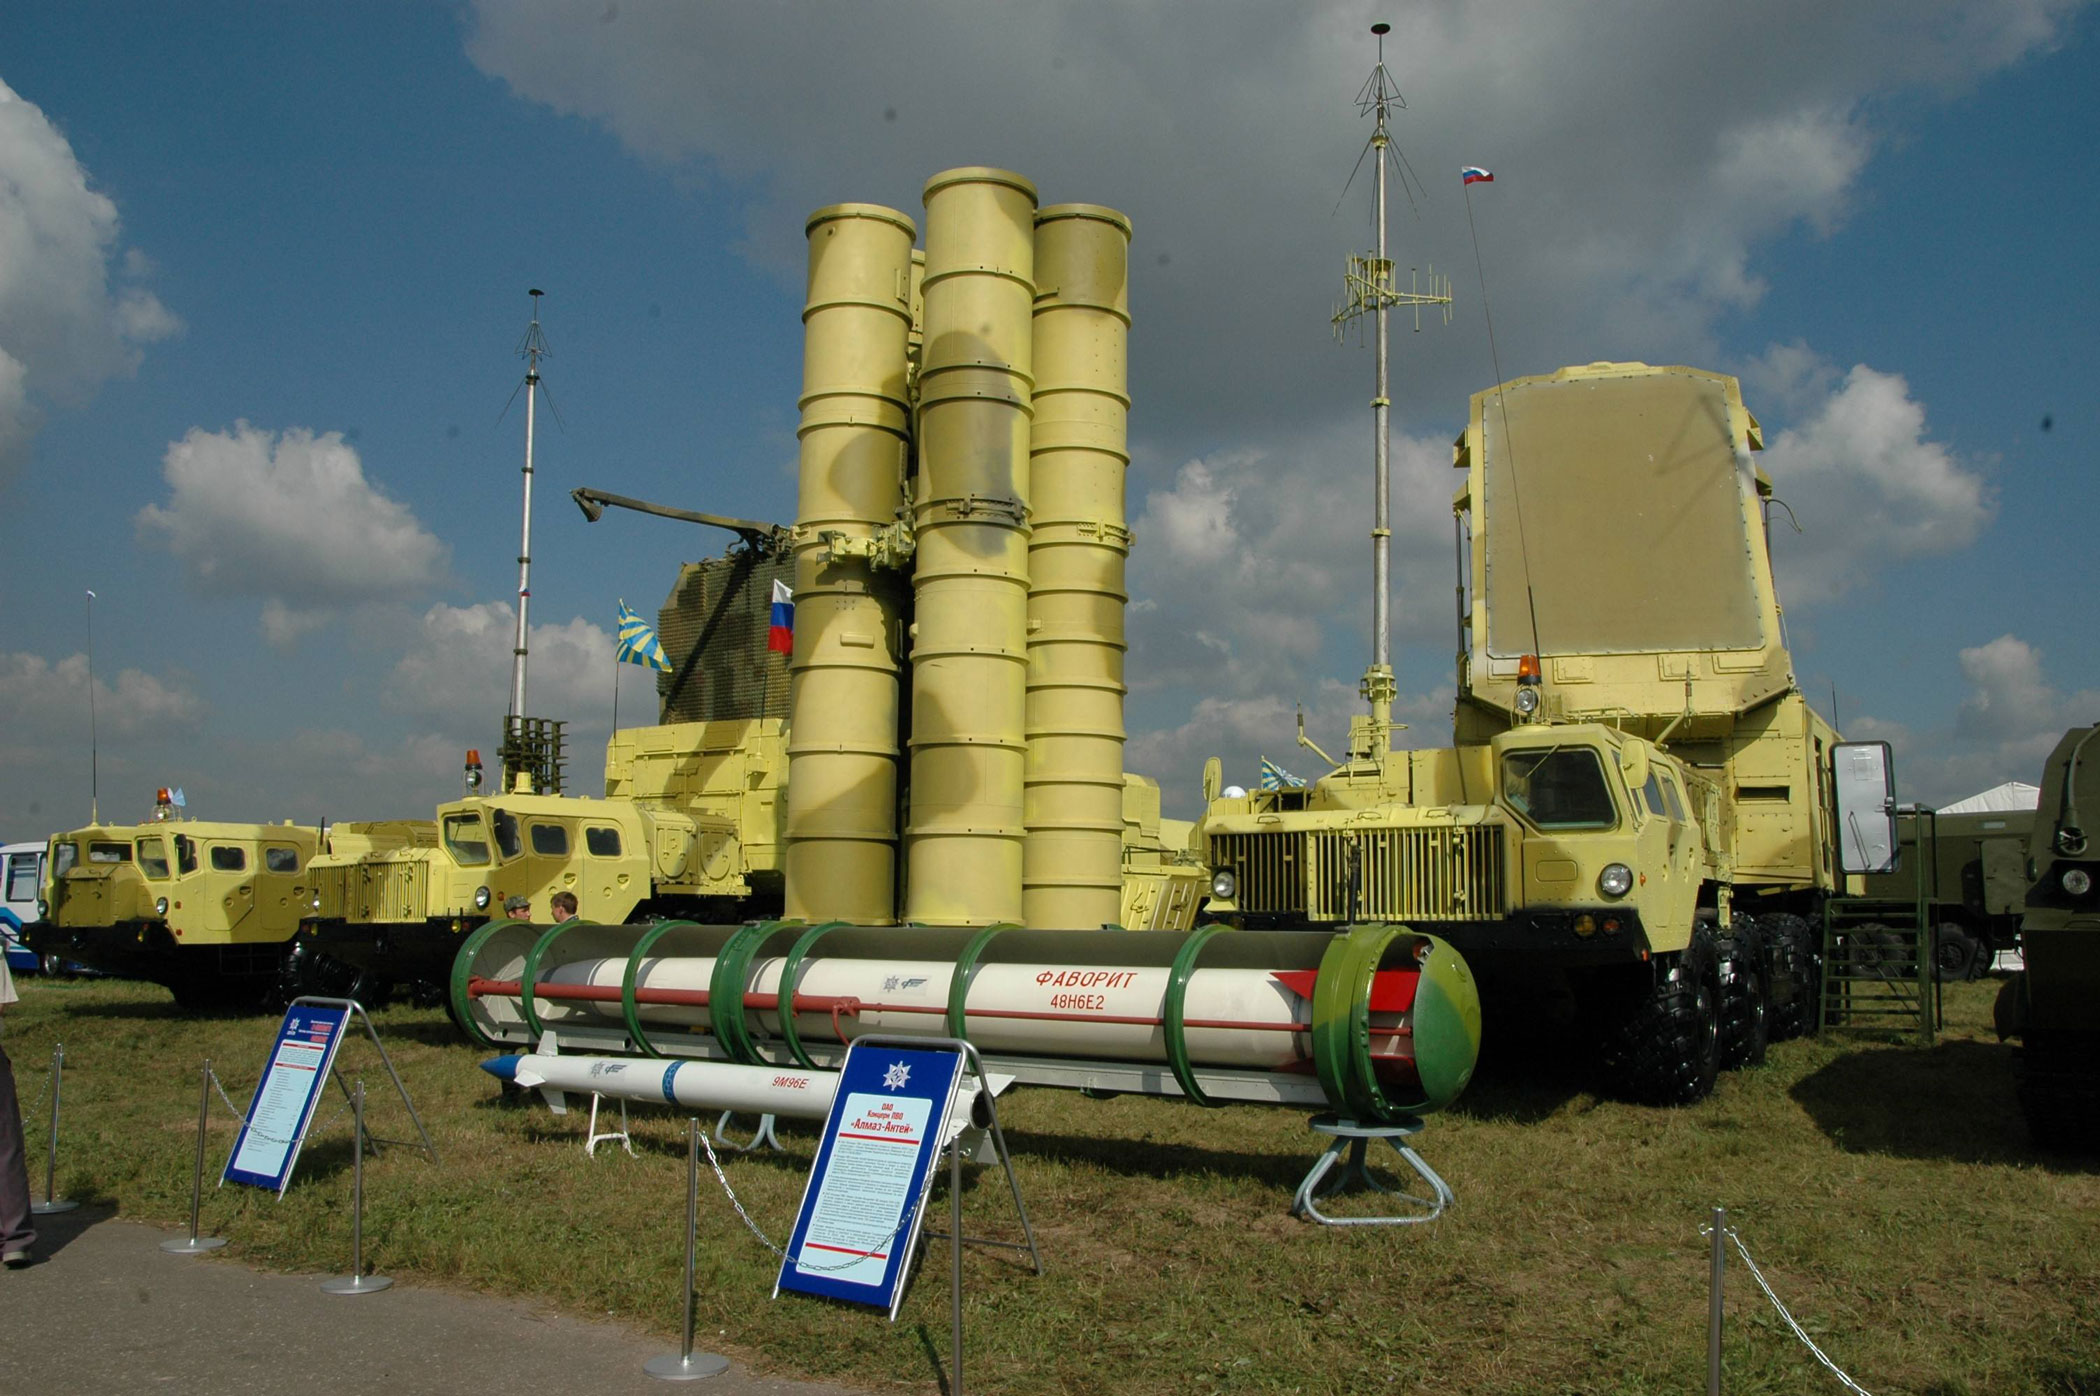 Hai biến thể hiện đại nhất của S-300 đang được Quân đội Nga sử dụng là S-300PMU2 và S-300VM đều có tầm bắn hiệu quả trên 200km và đủ khả năng tiêu diệt các mục tiêu bay ở độ cao 30.000m.